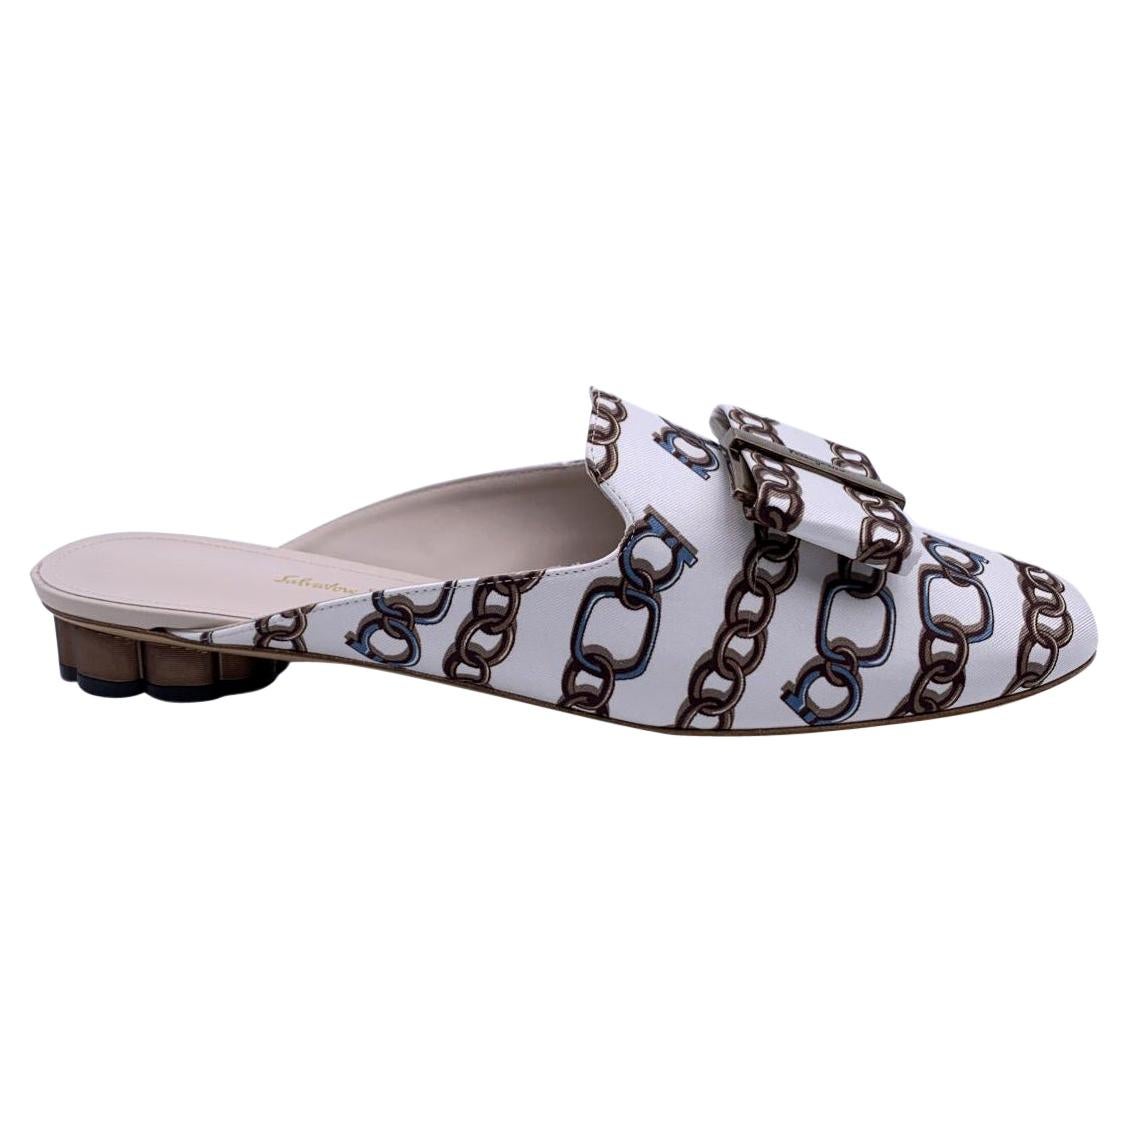 Salvatore Ferragamo White Chain Sciacca Twill Shoes Size US 9C EU 39.5